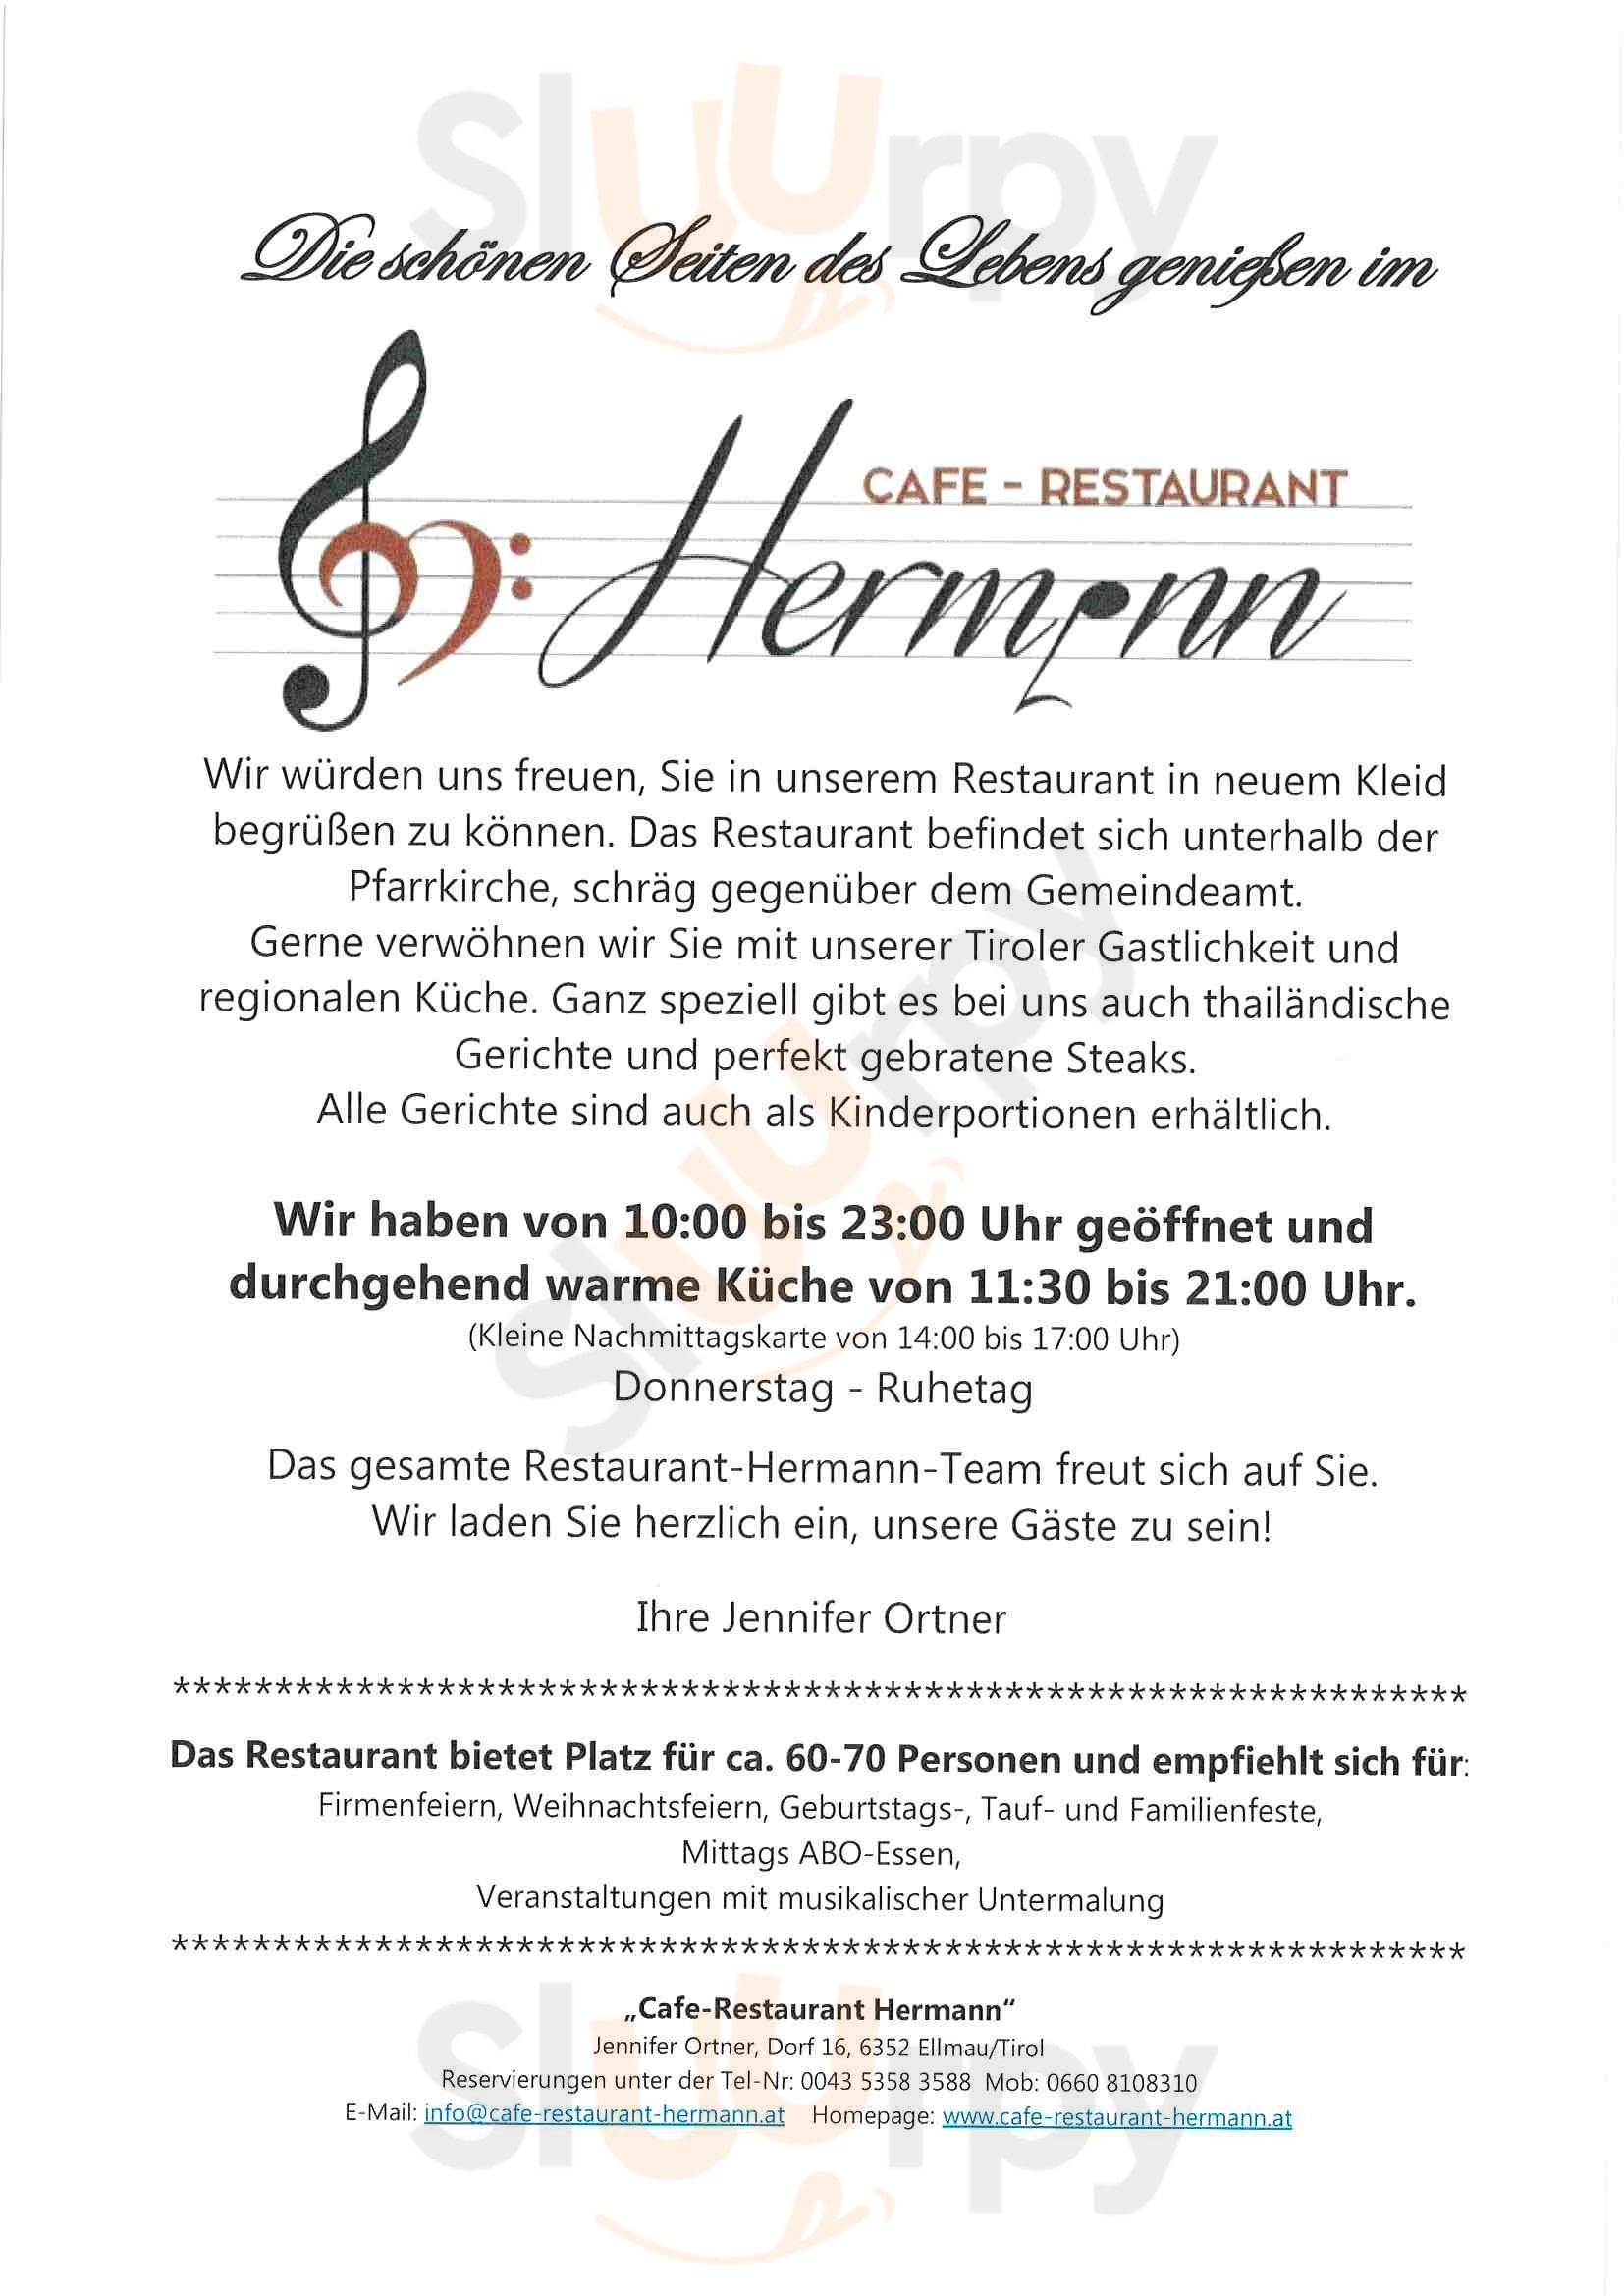 Cafe Restaurant Hermann Ellmau Ellmau Menu - 1